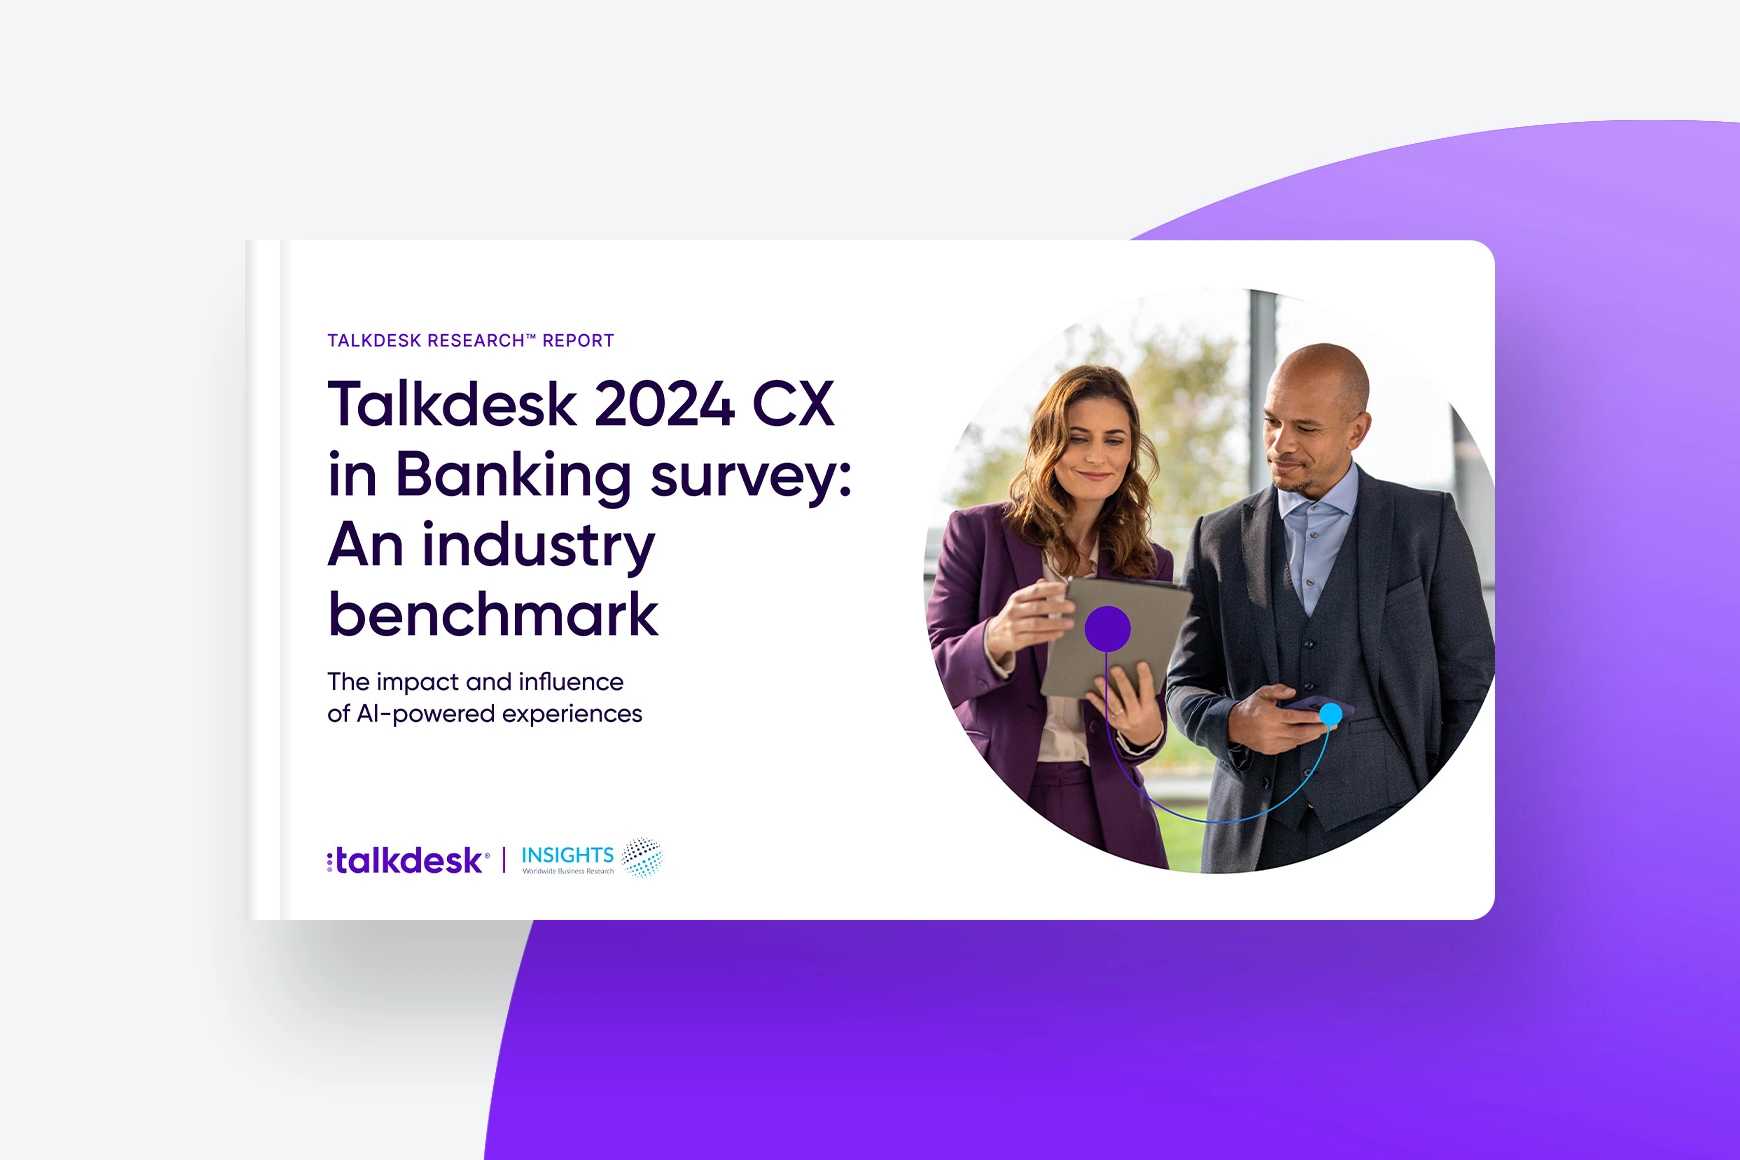 Sondaggio Talkdesk 2024 sulla CX nel Settore Bancario: un benchmark nel settore